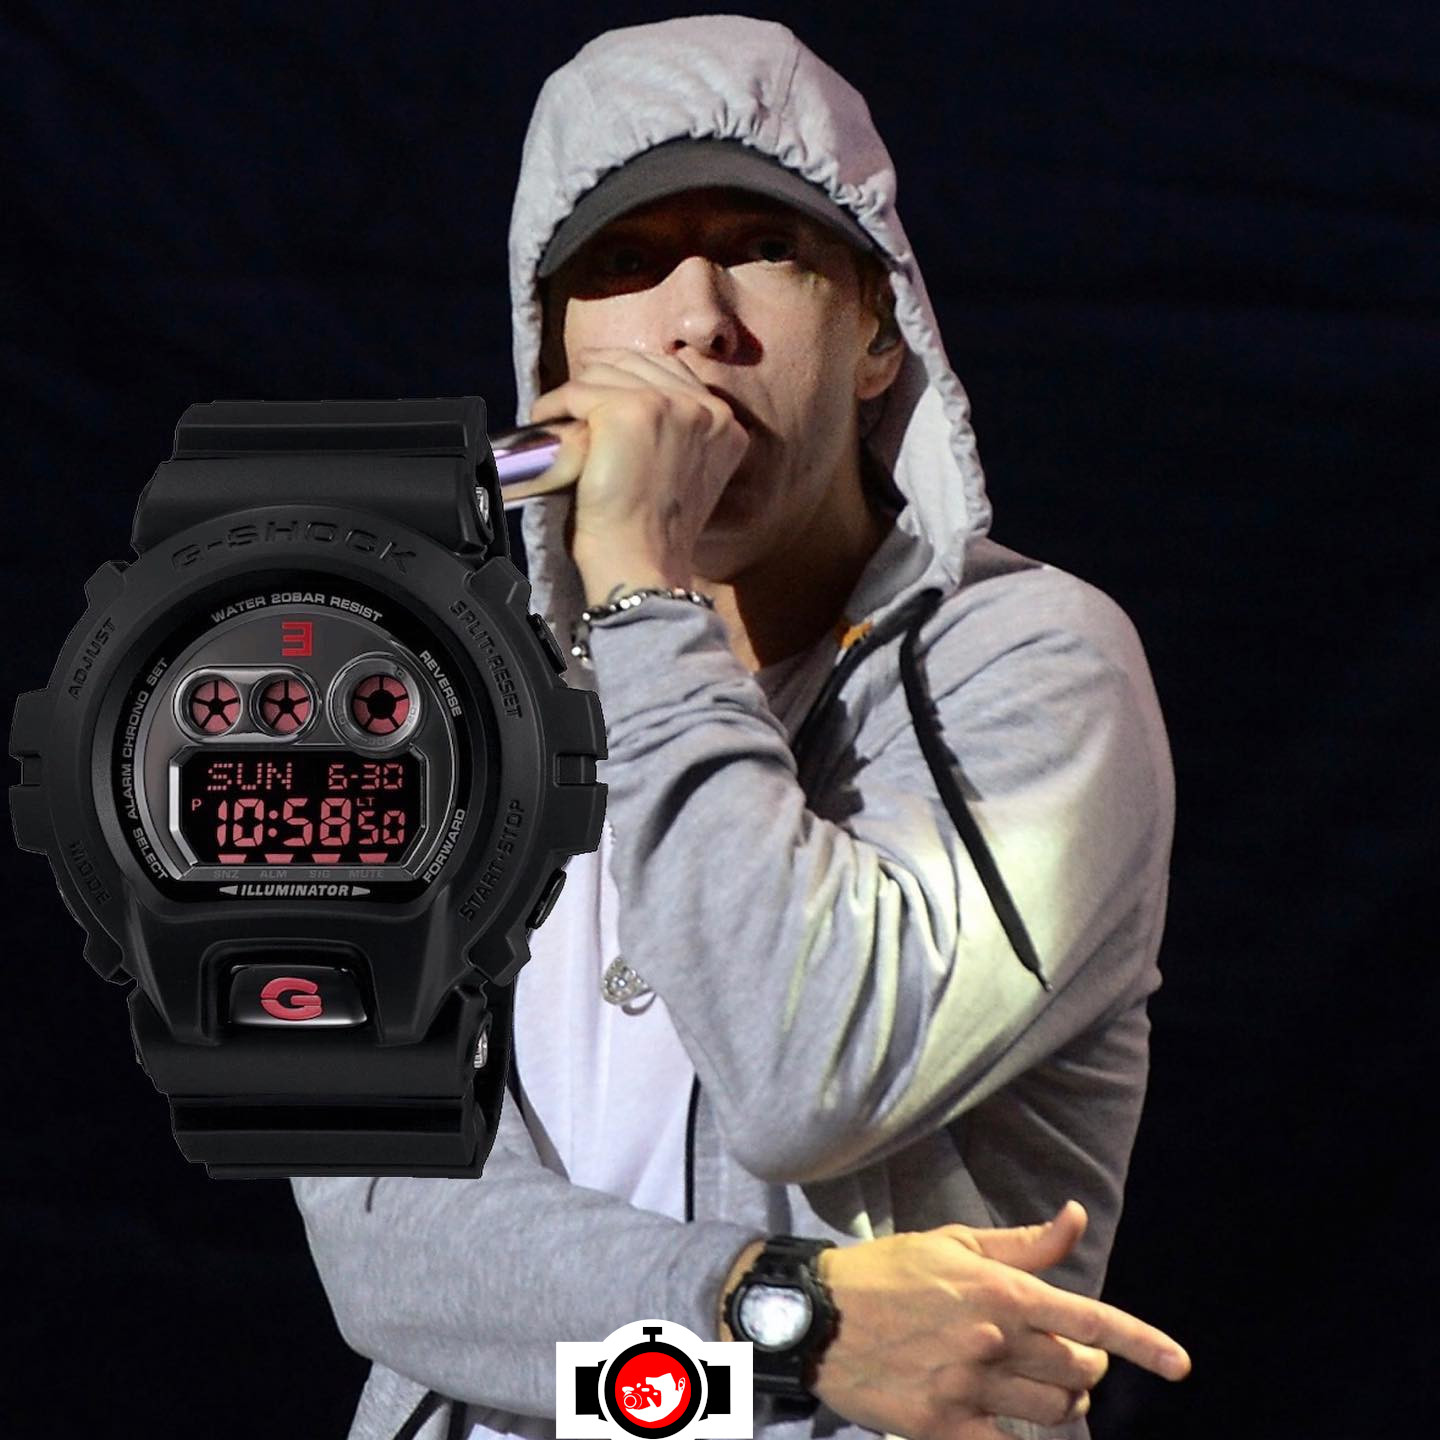 rapper Eminem spotted wearing a Casio X6900MNM-1ER